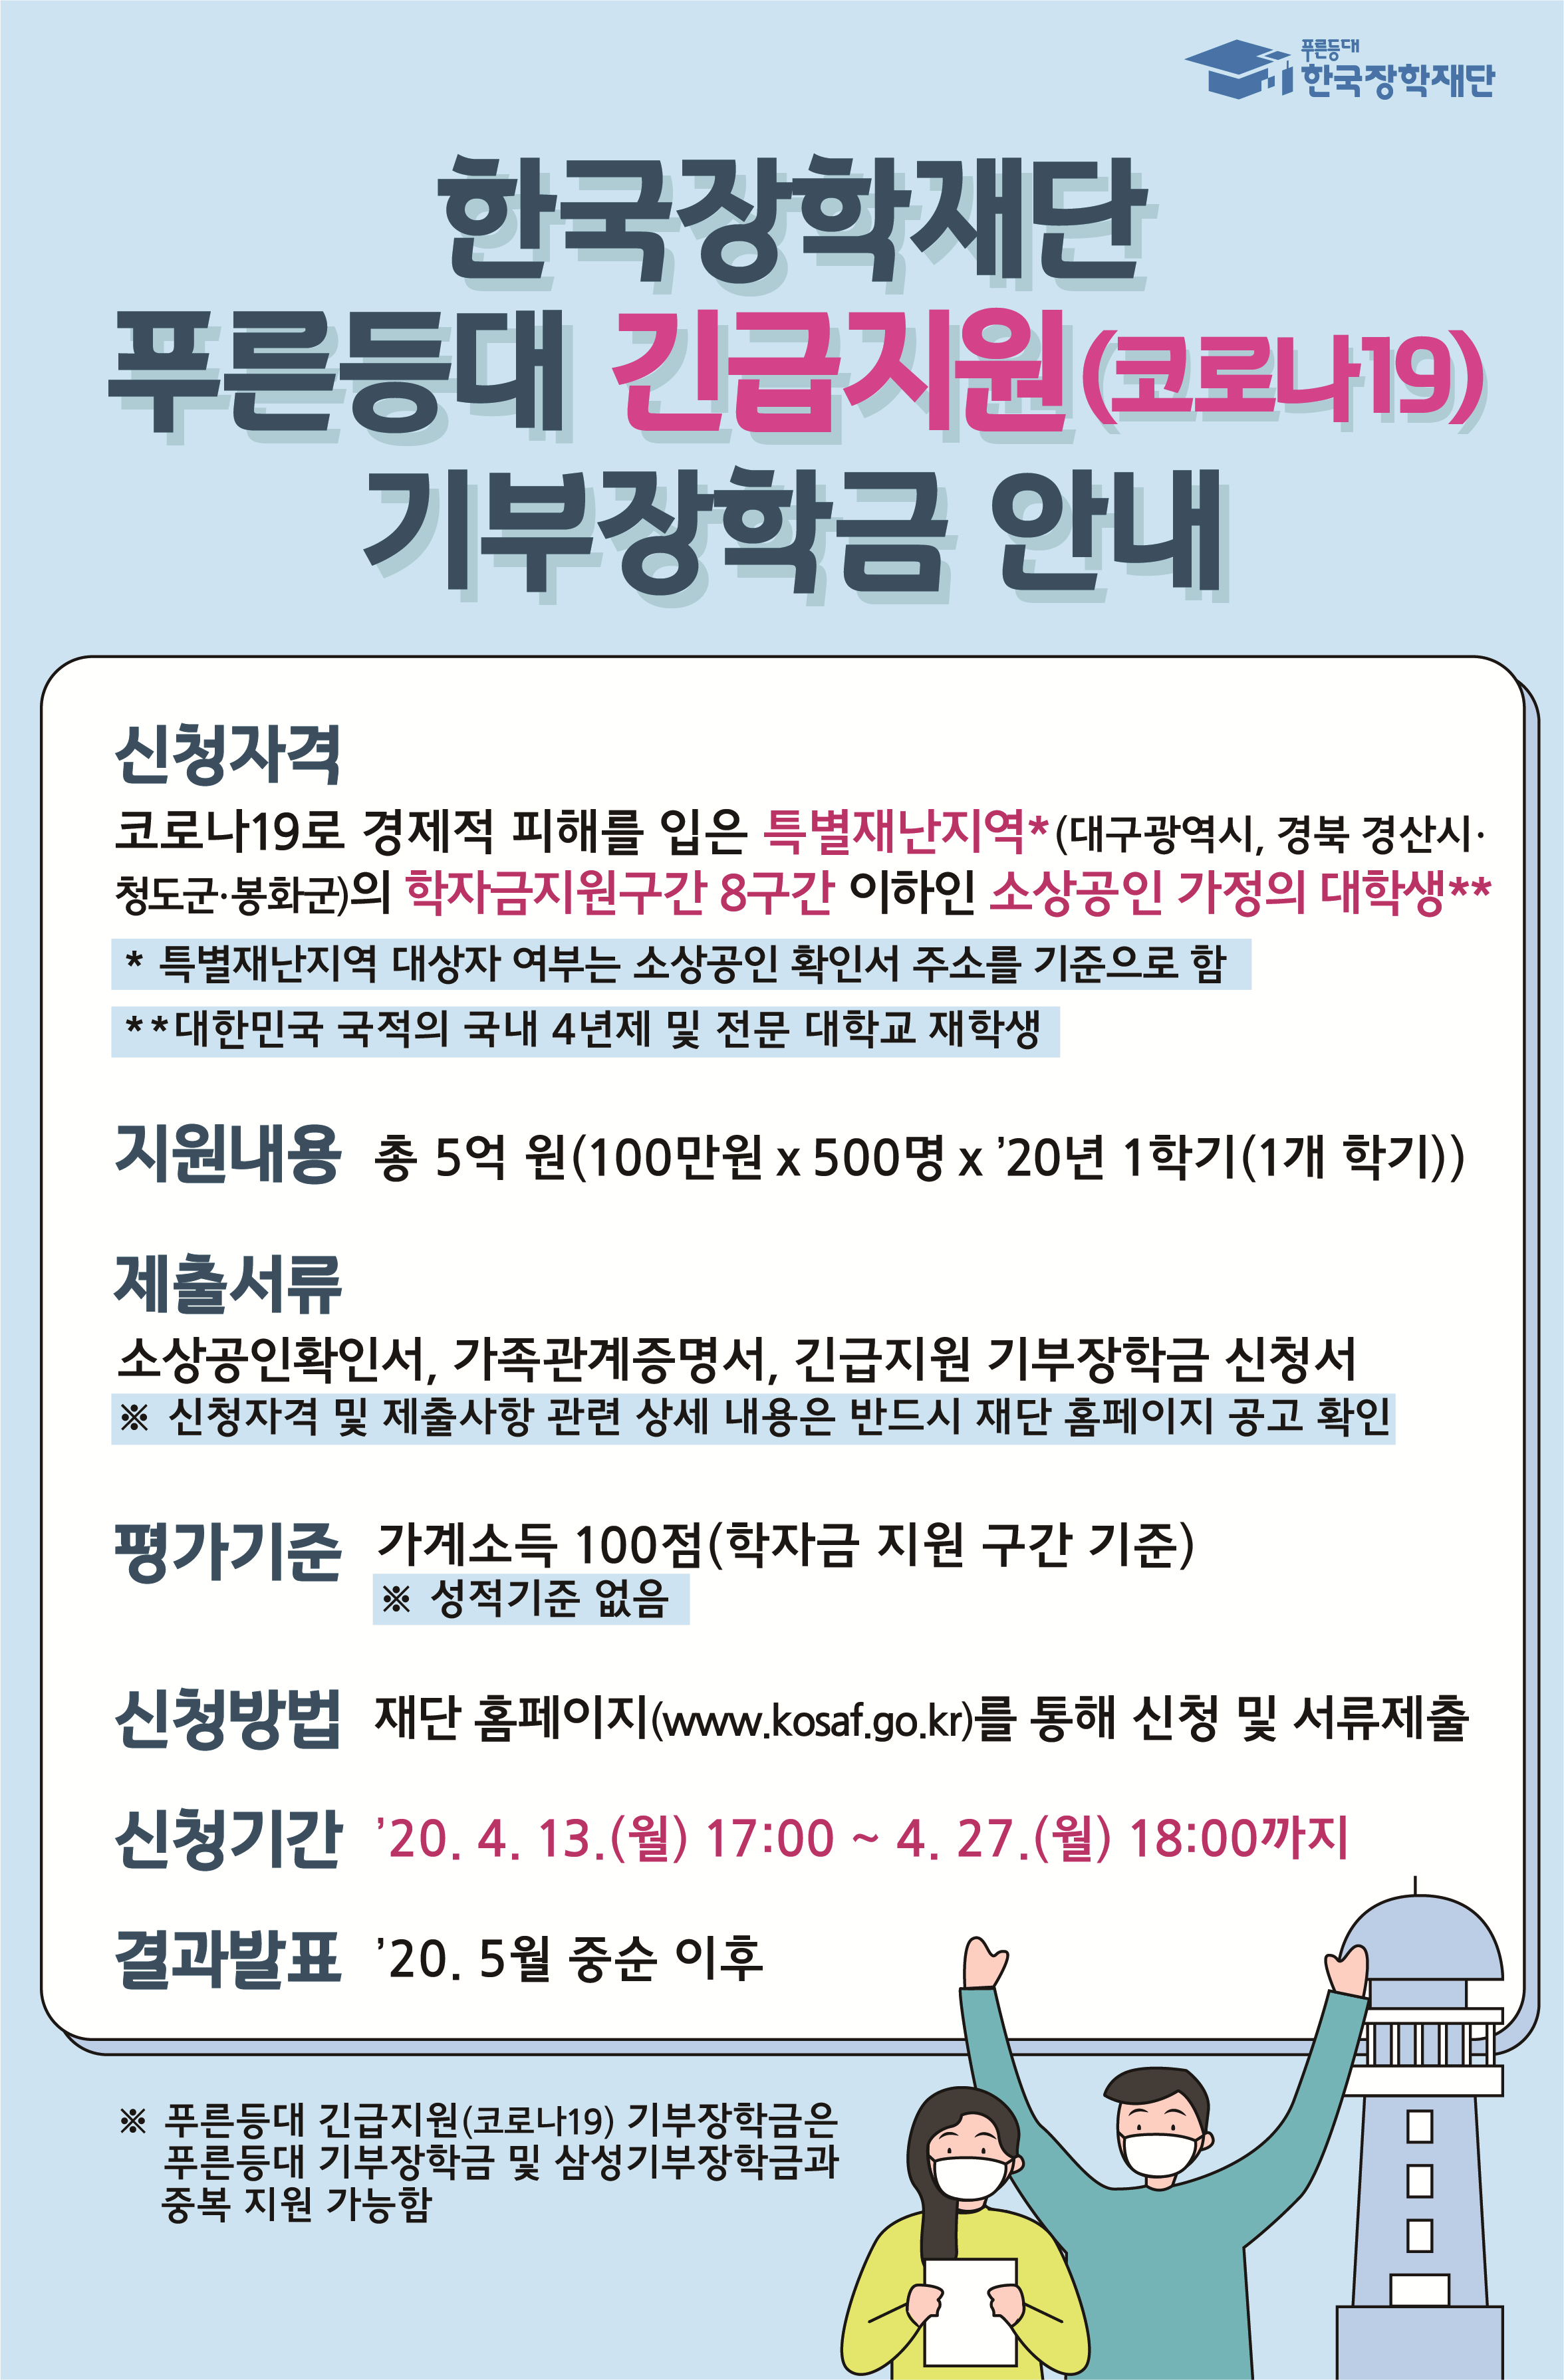 장학 홈페이지 한국 재단 한국장학재단 홈페이지